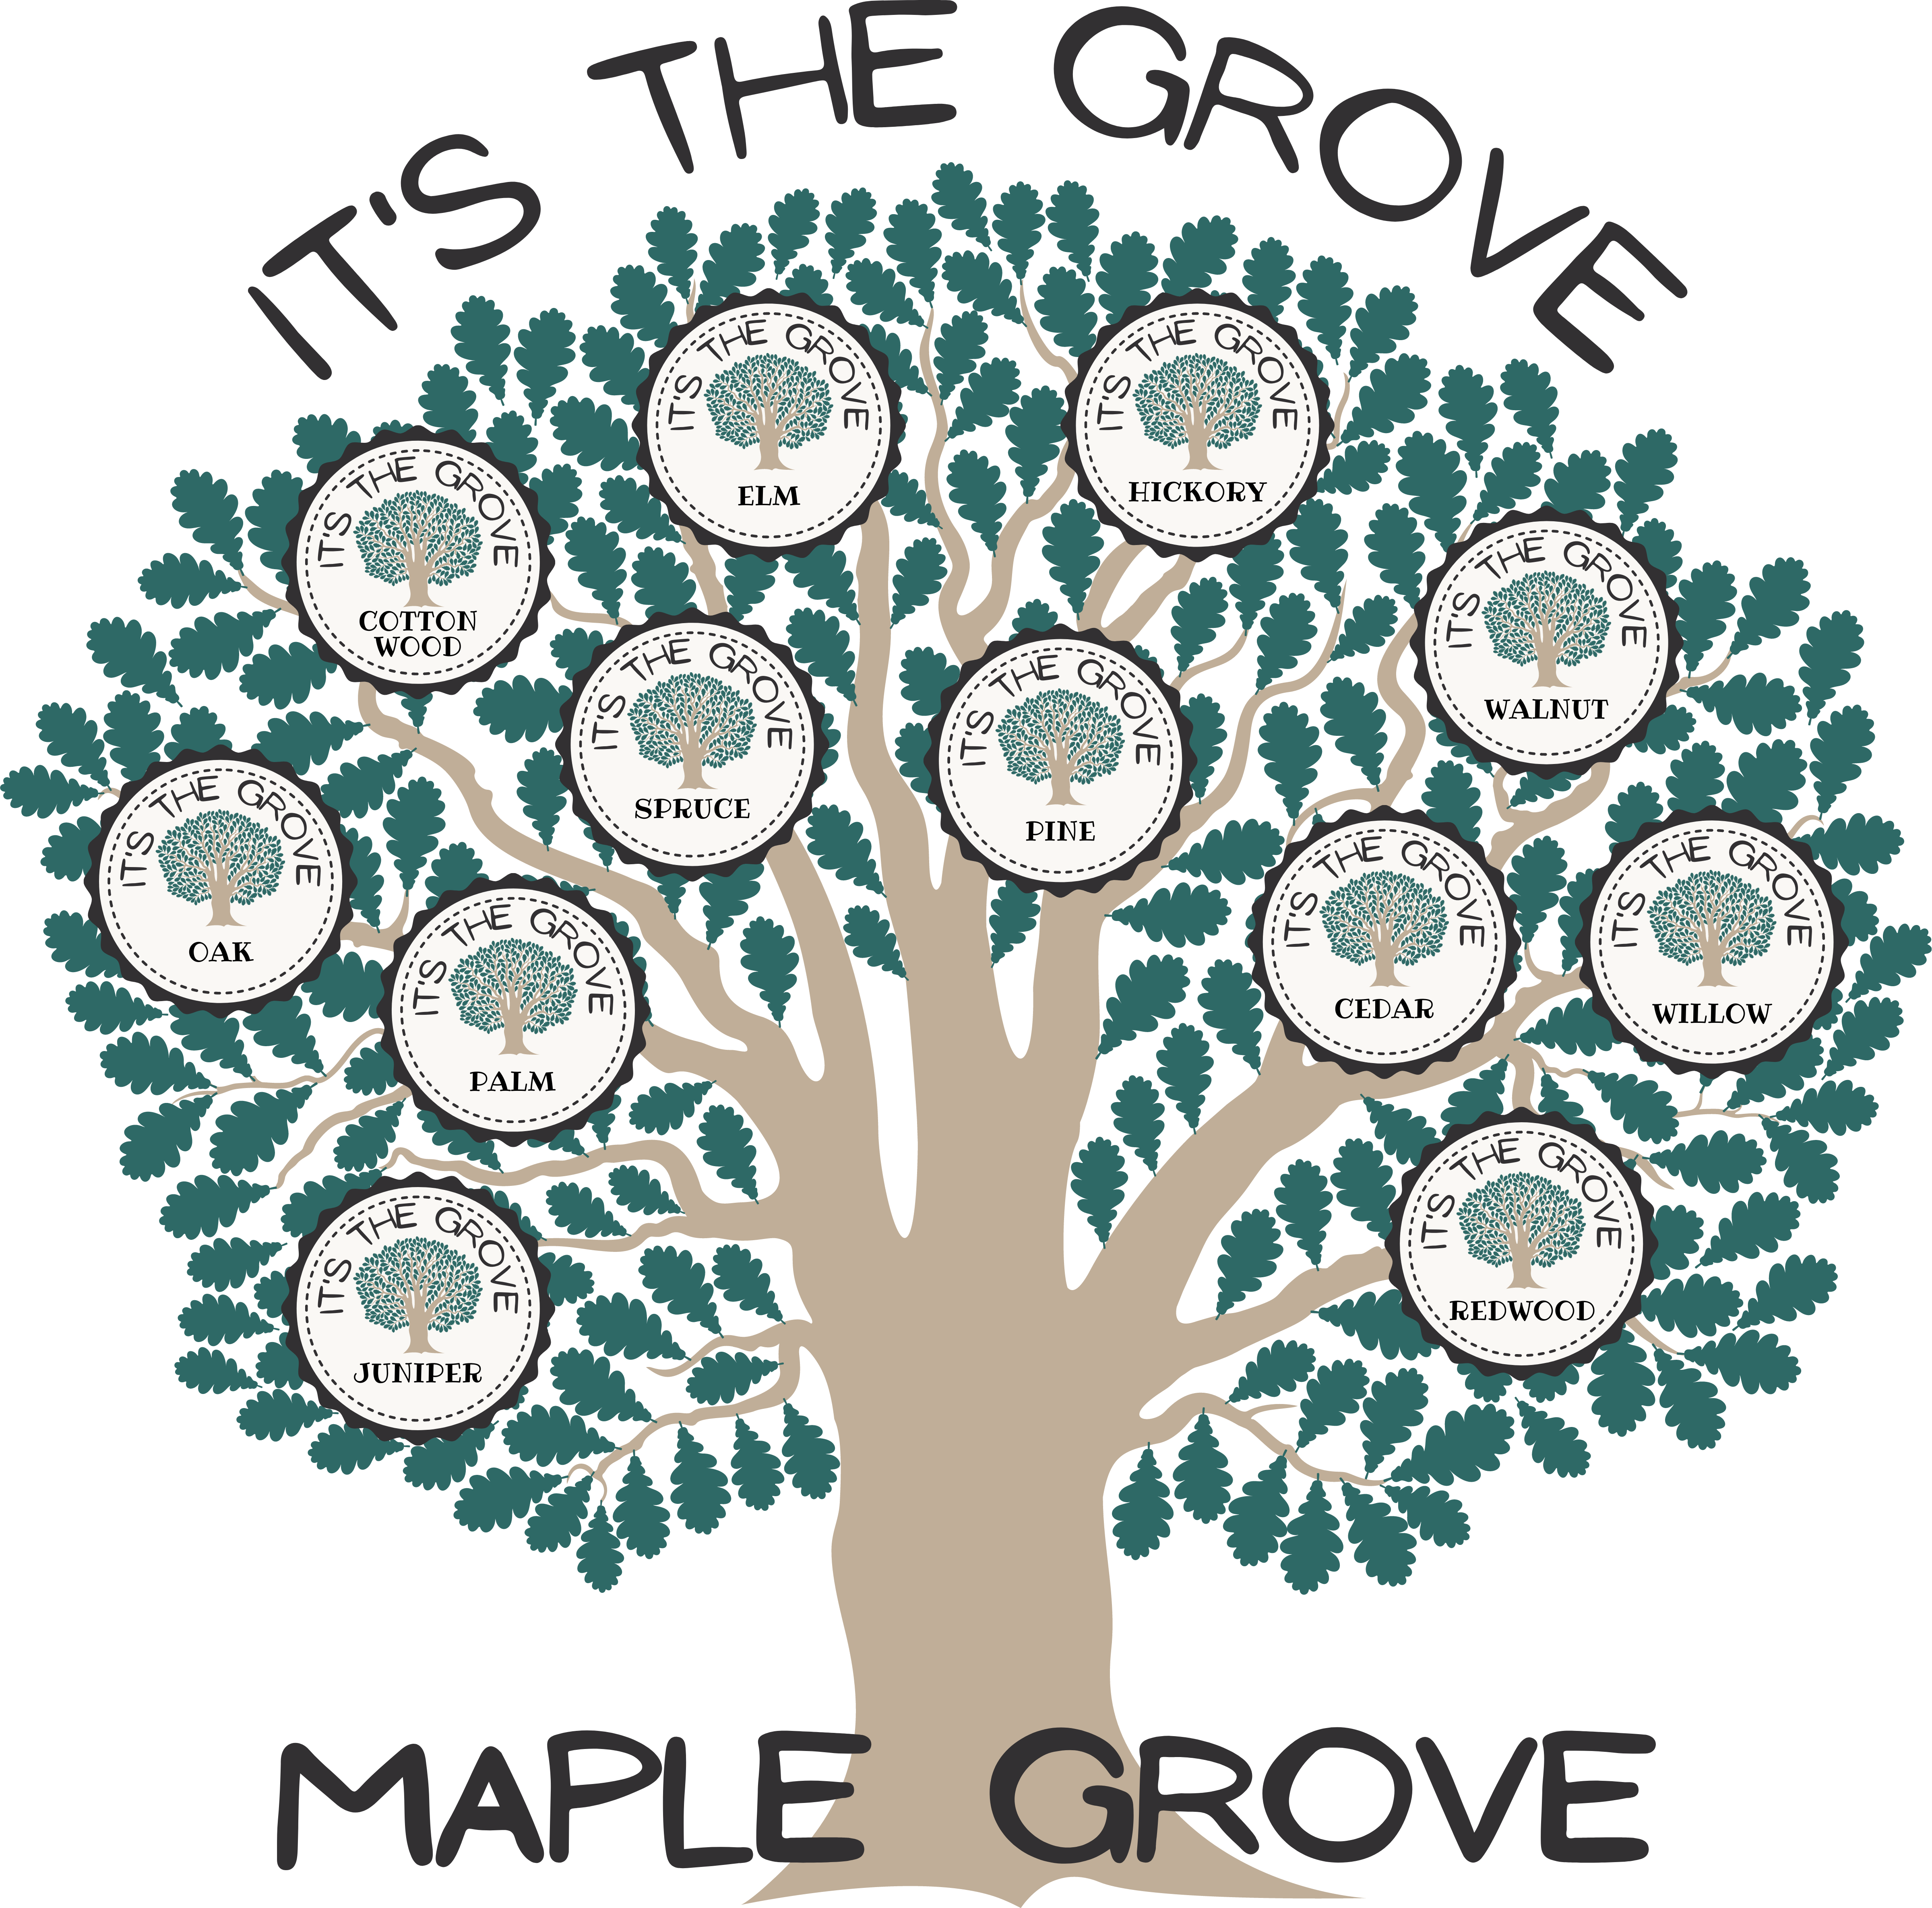 The grove